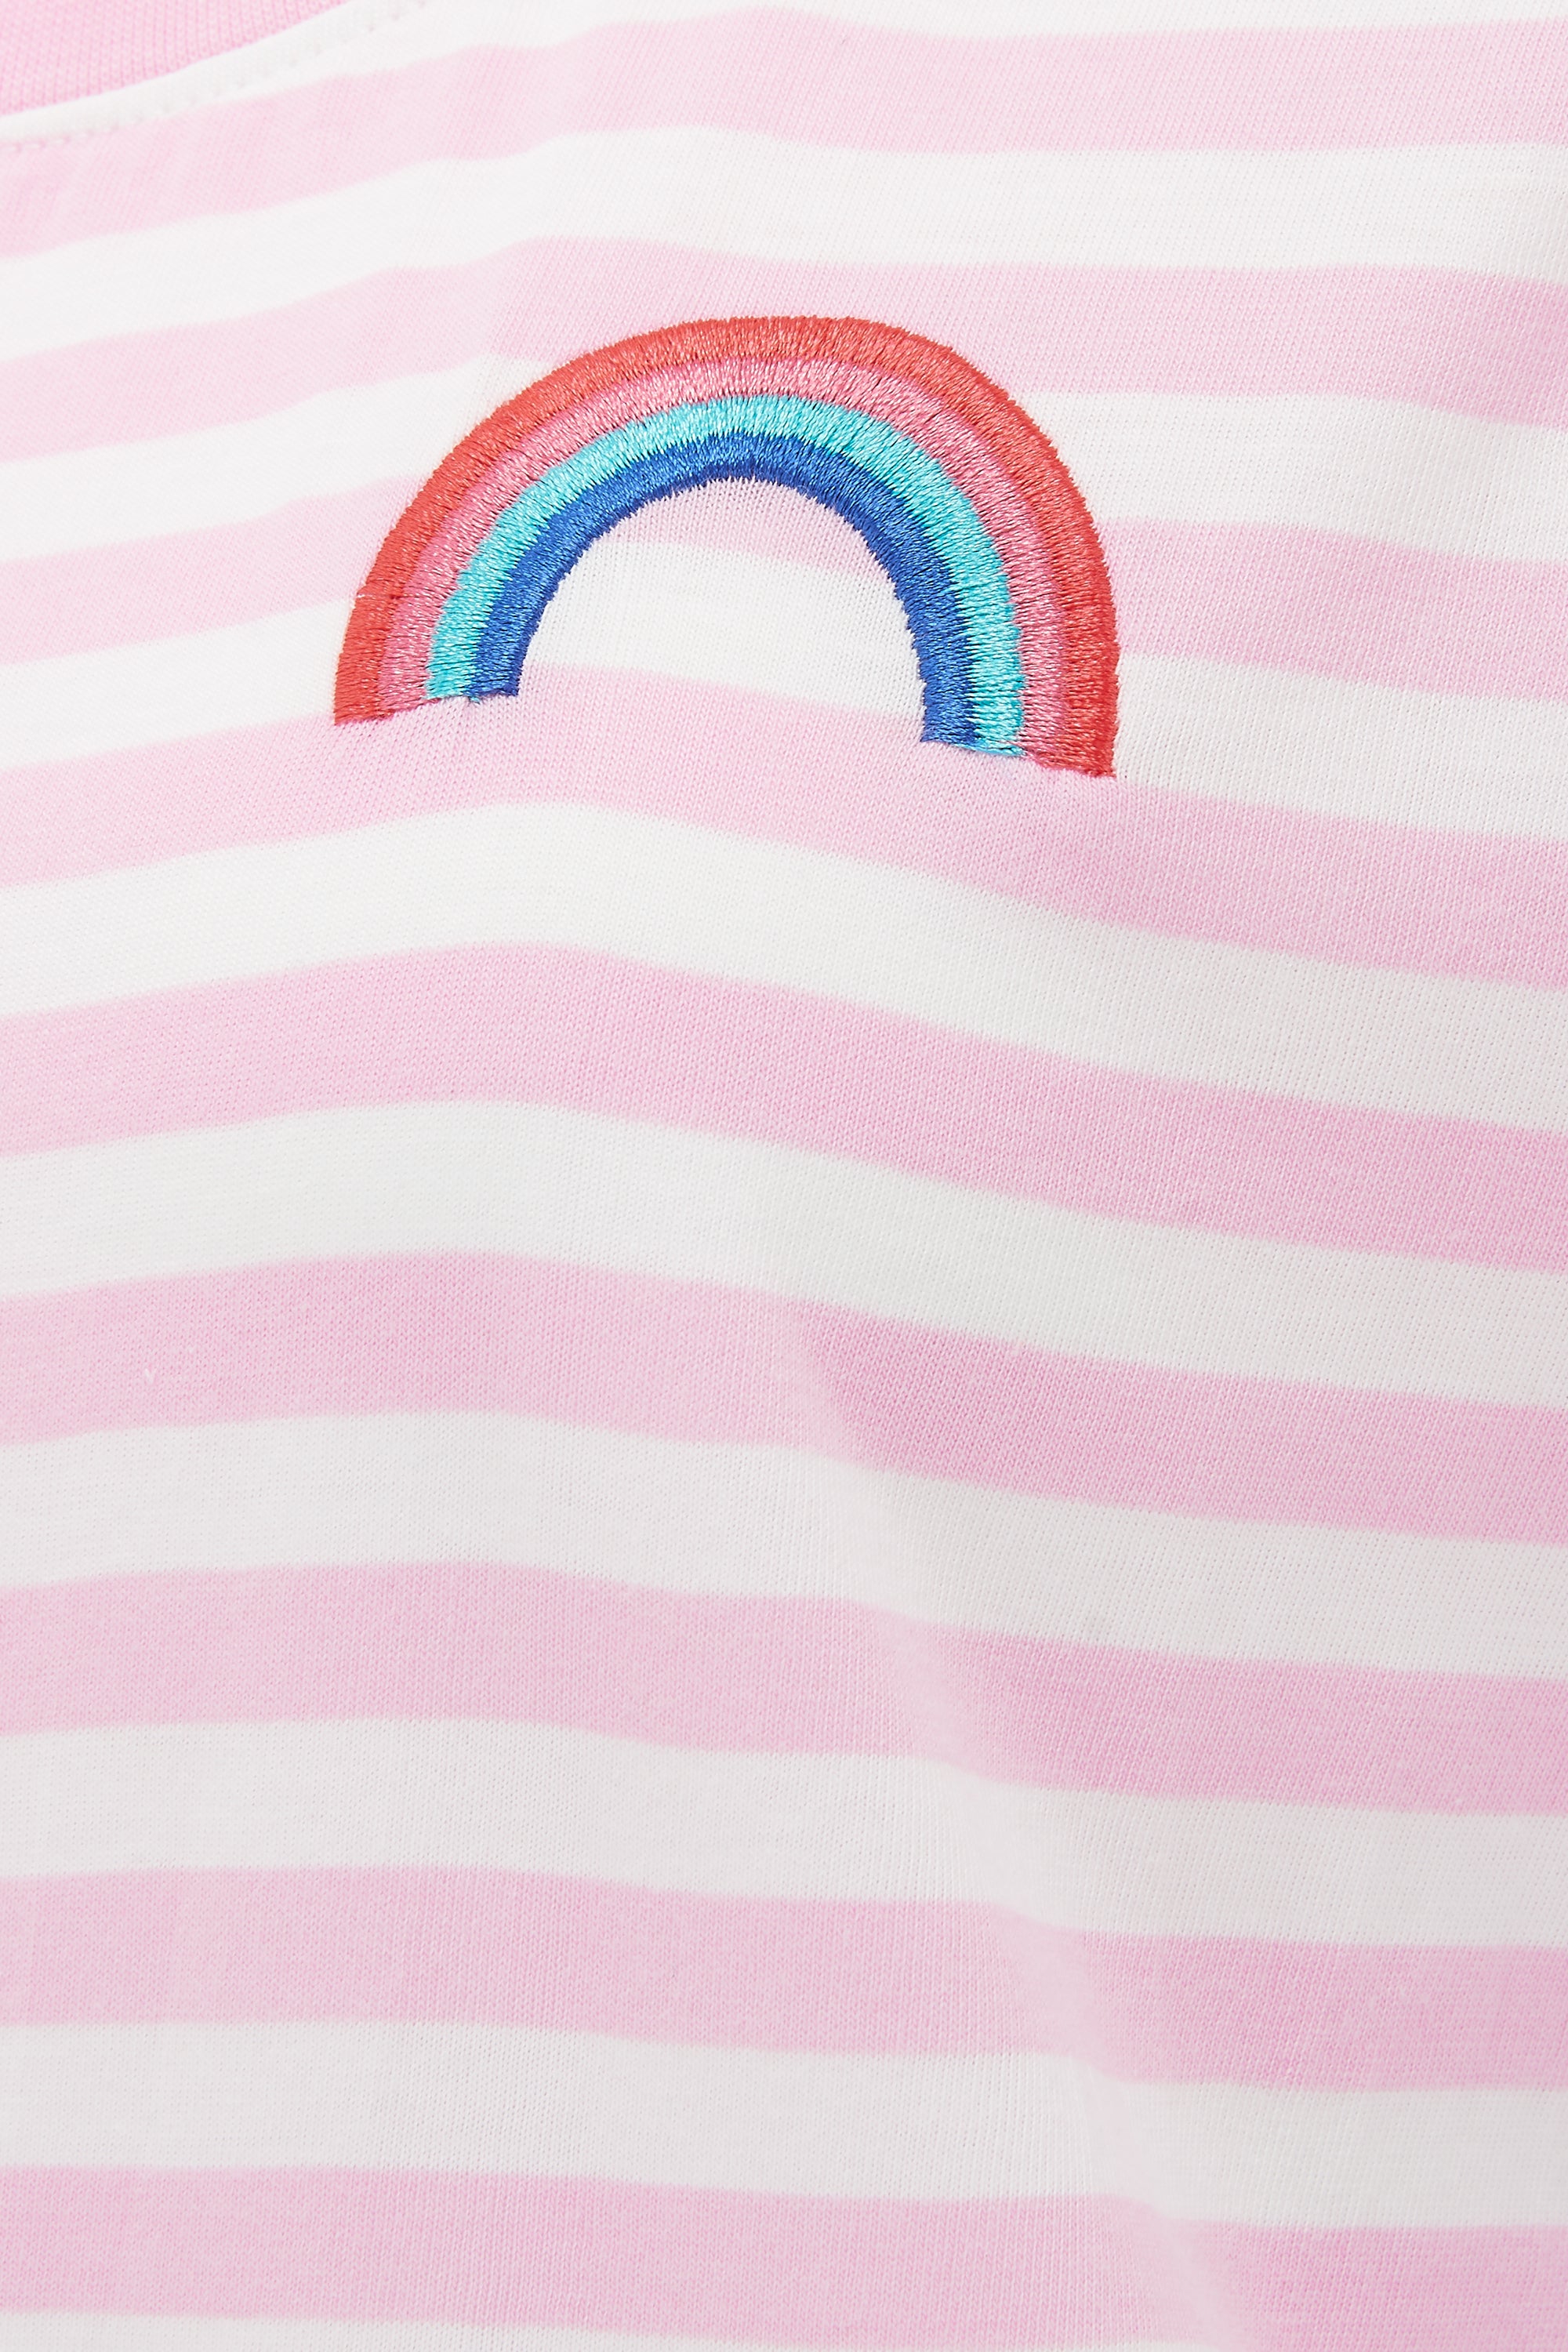 Maggie T-Shirt | Stripe Rainbow (Pink/Off White)